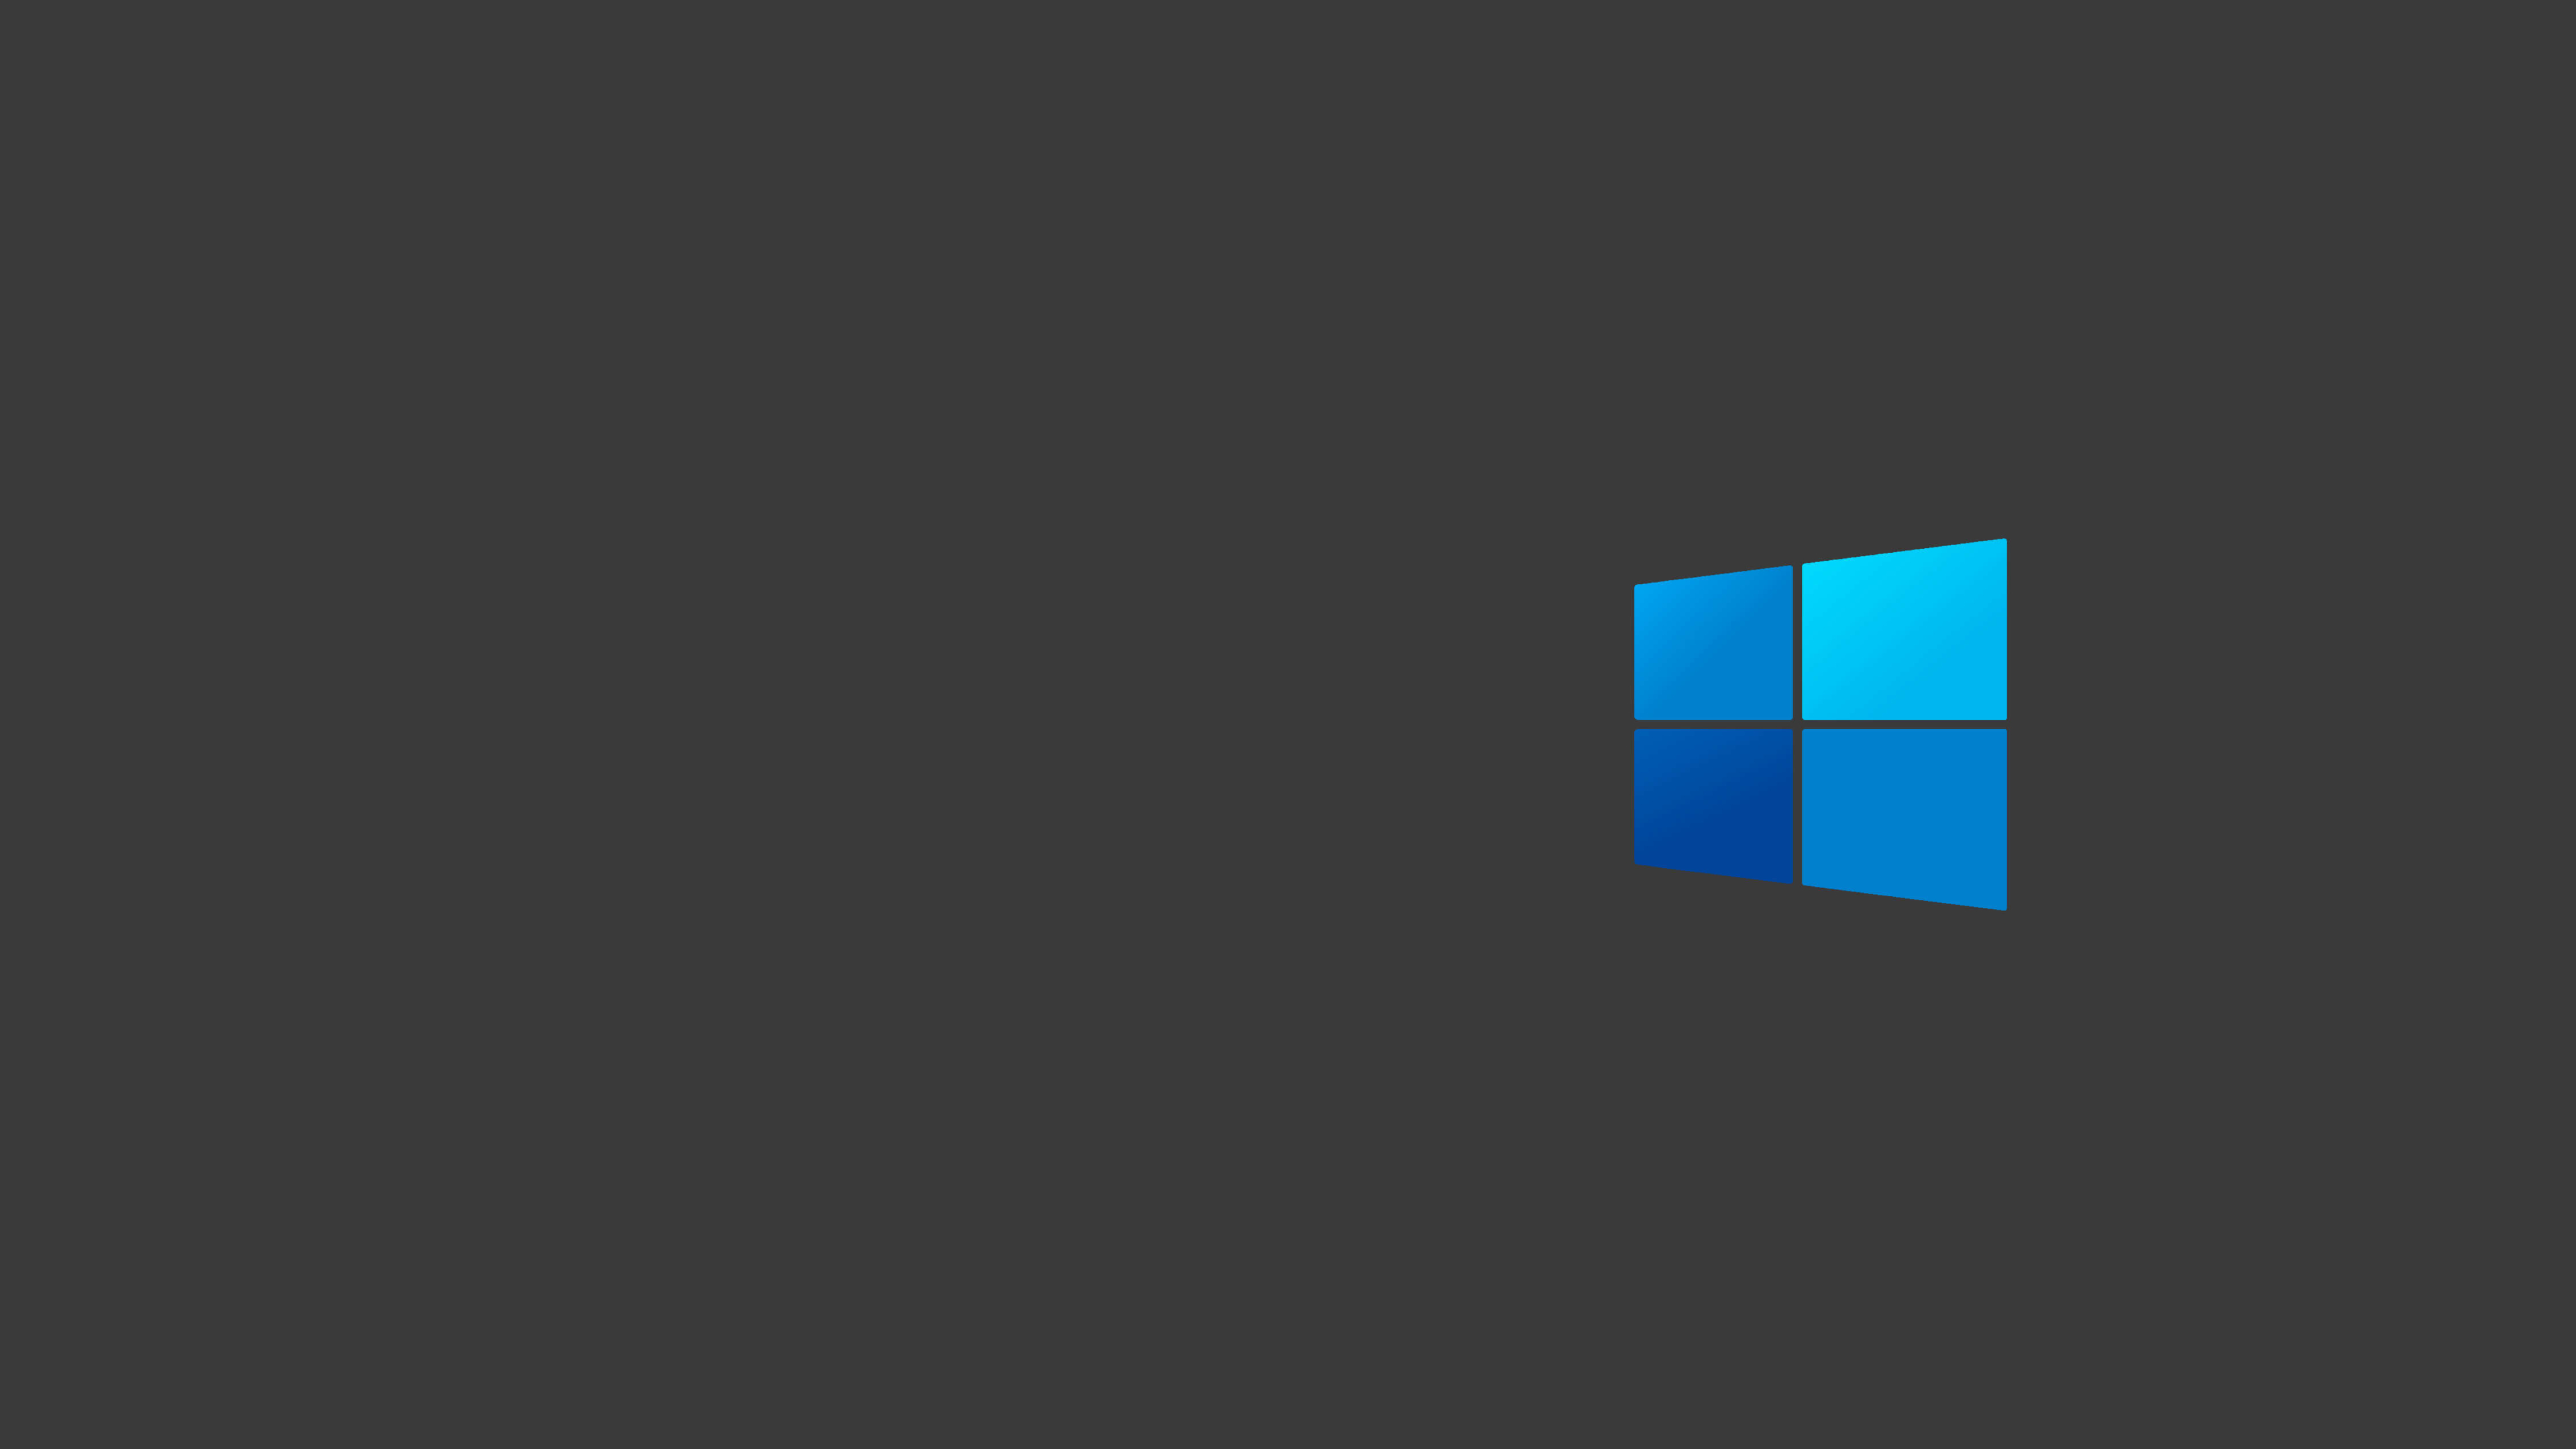 3840x2160 Windows 10 Dark Logo Minimal 4k Wallpaper Hd Minimalist 4k